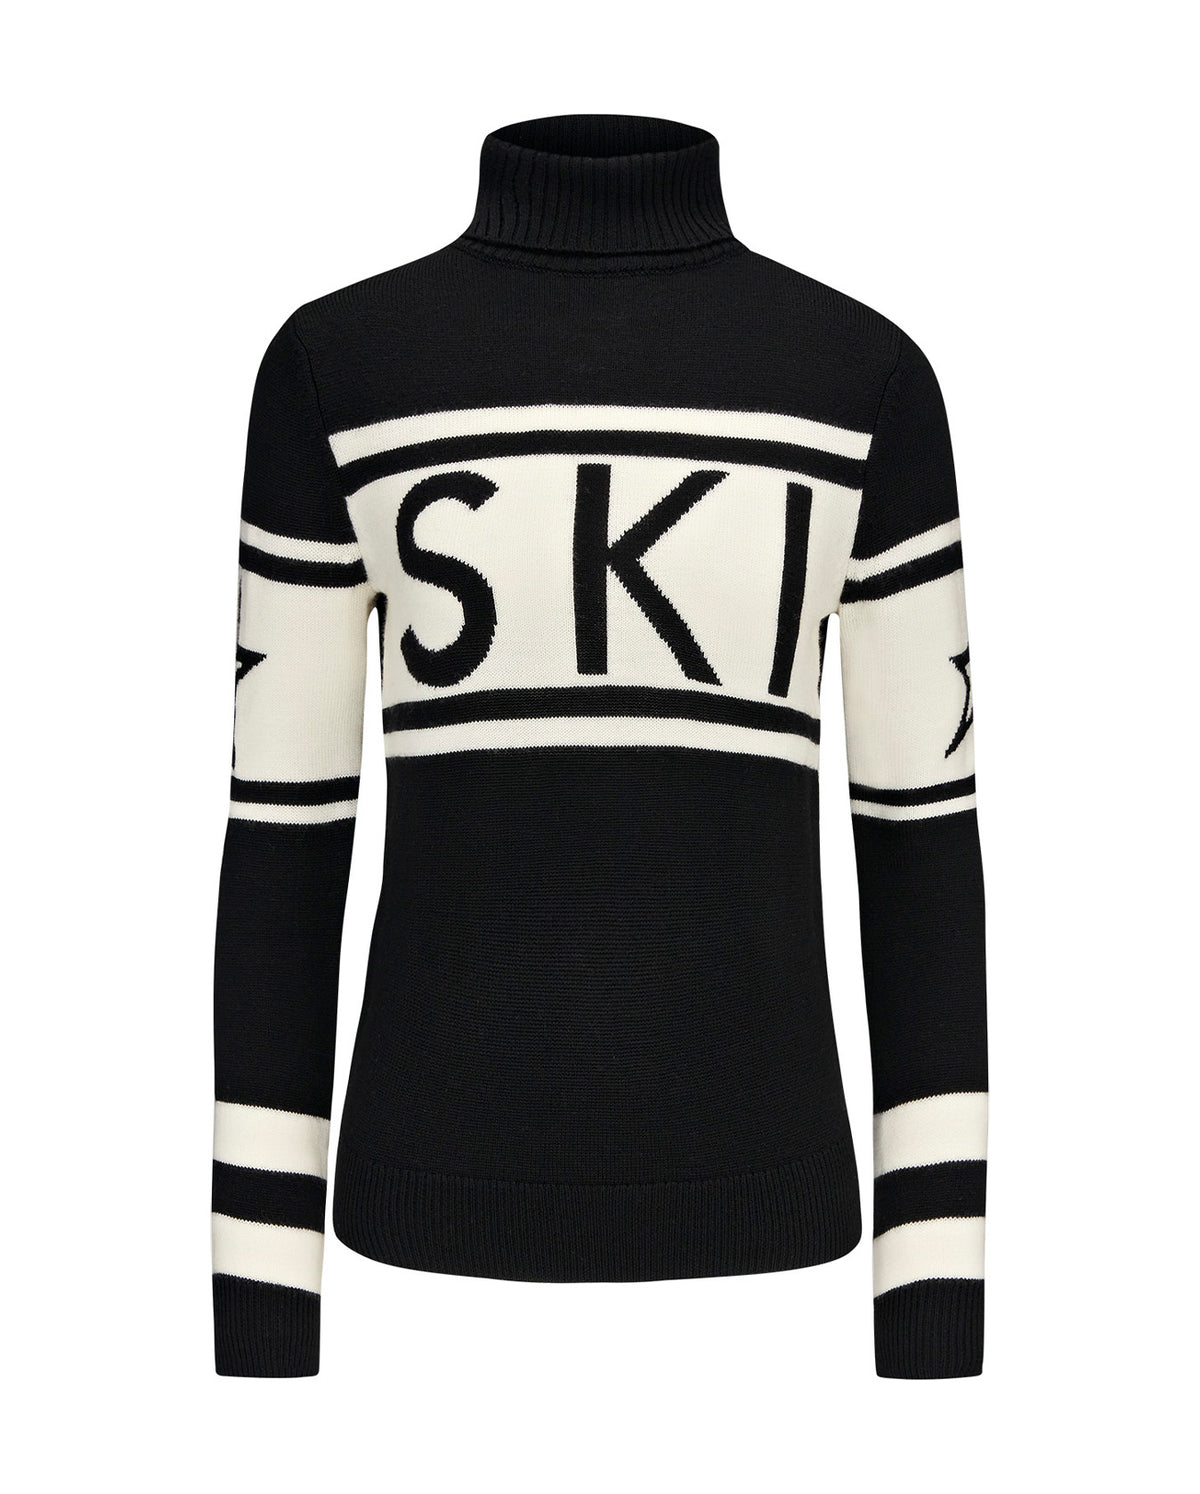 Schild Sweater - Black